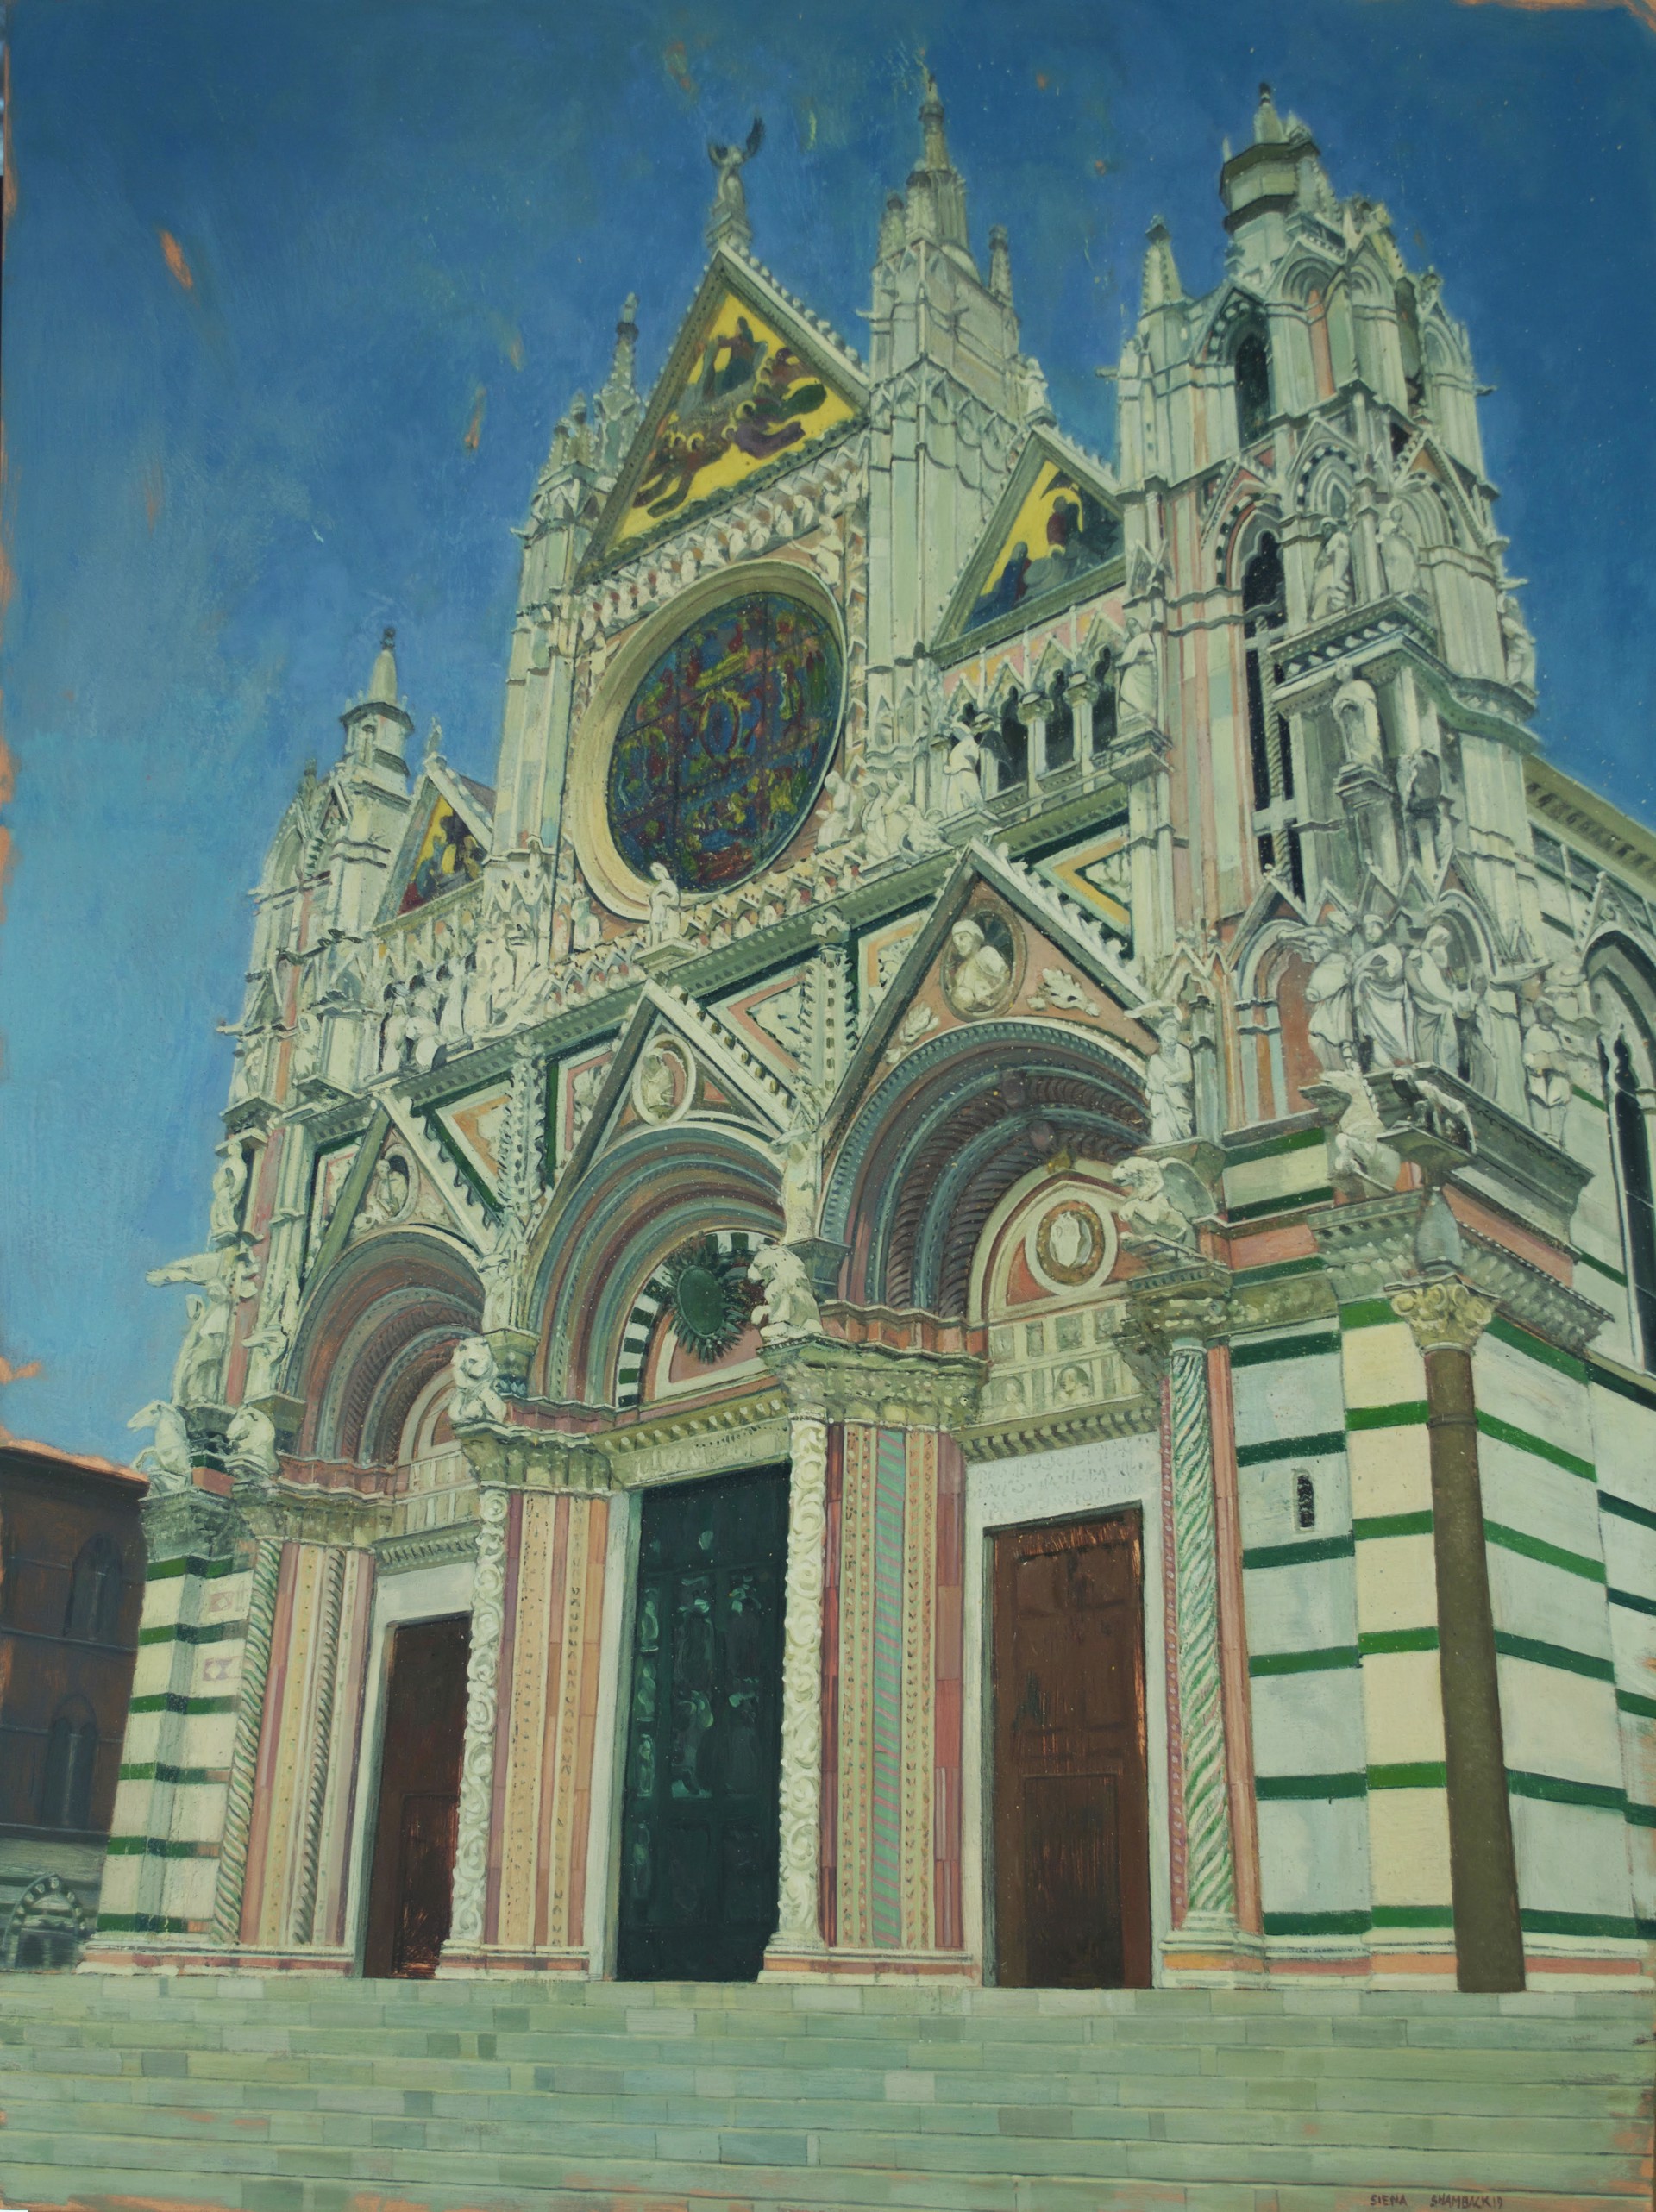 Duomo di Siena by Benjamin J. Shamback